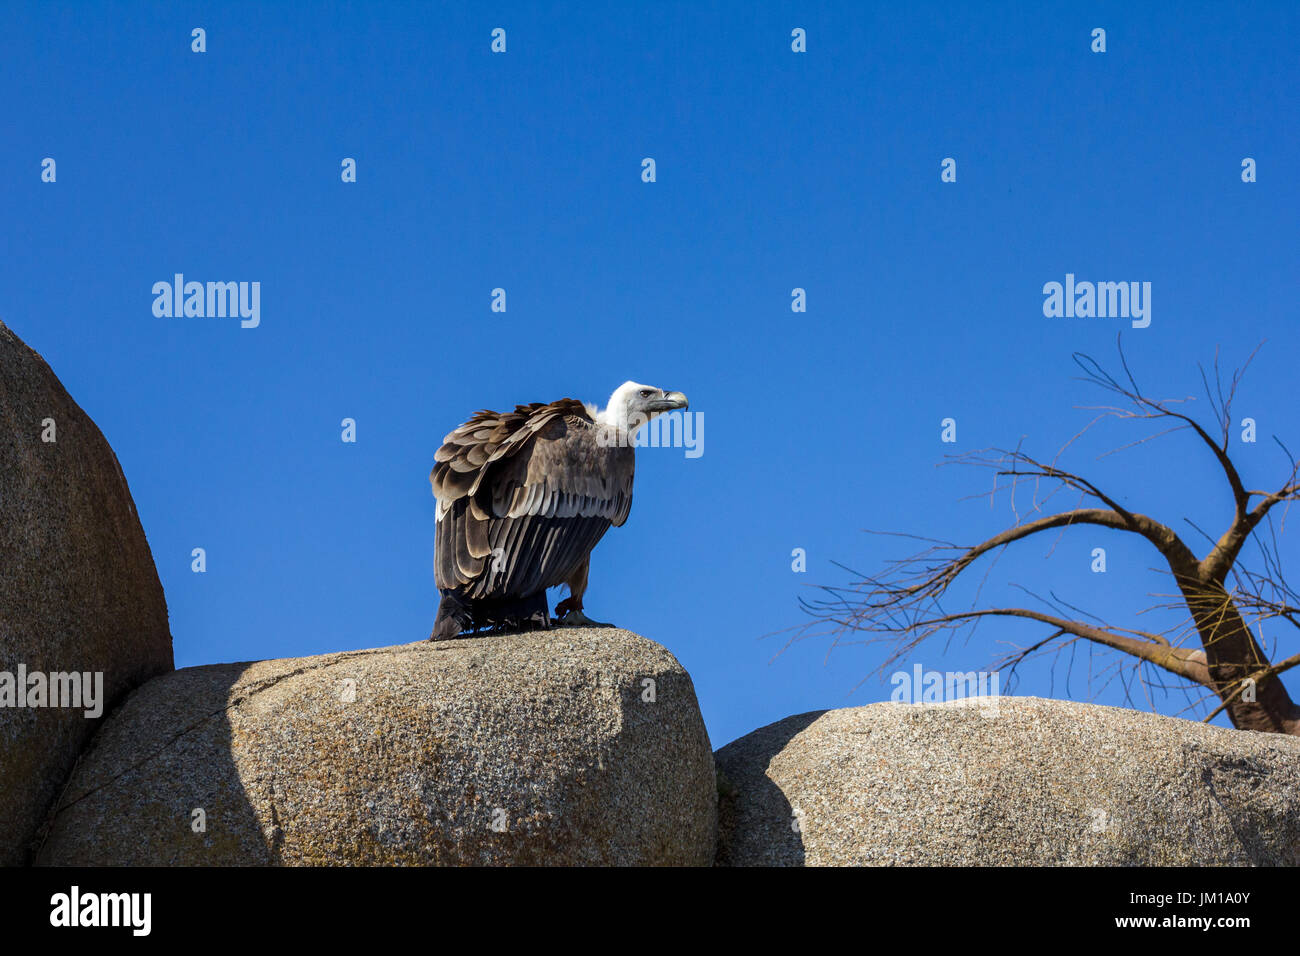 La fauna animale scena dalla natura. vulture seduto sulla roccia Foto Stock